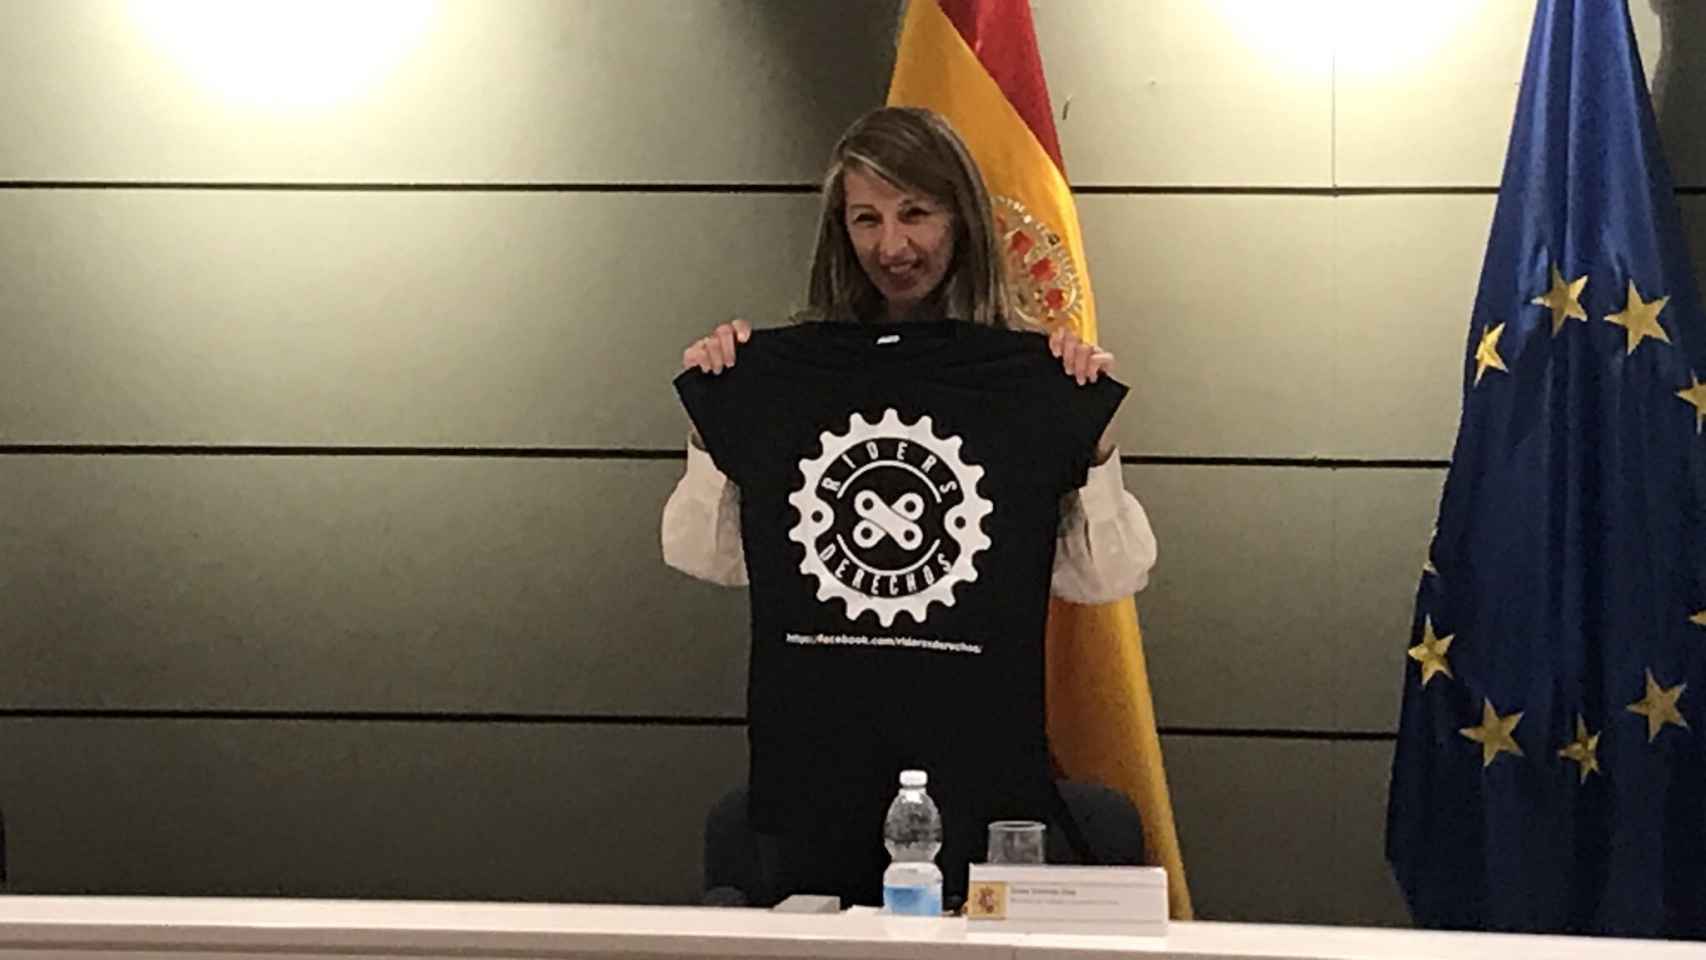 Yolanda Díaz posa con la camiseta de Riders x derechos.